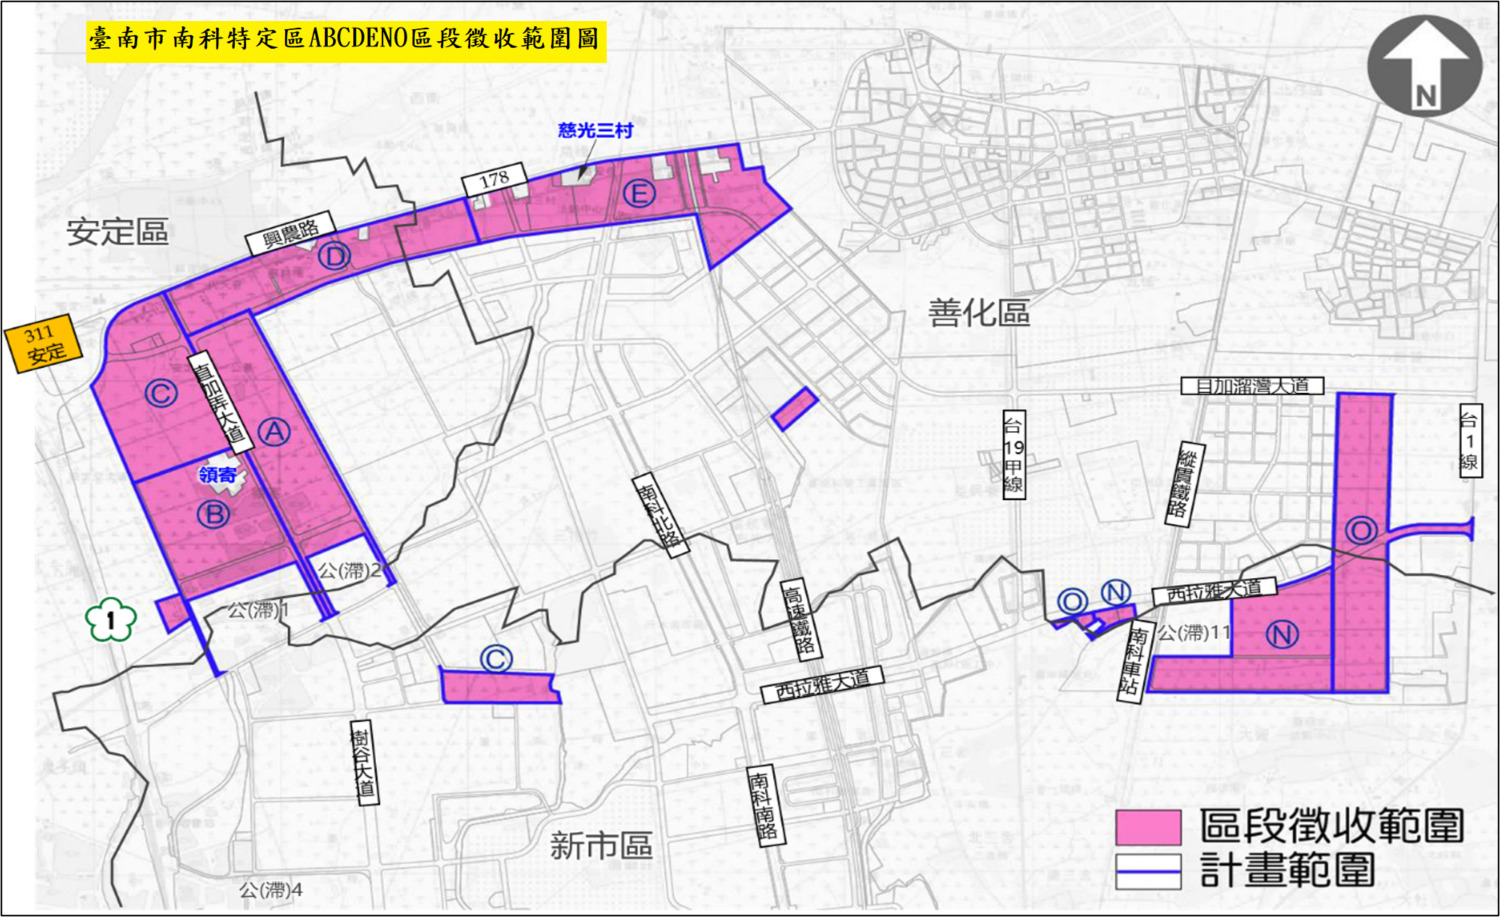 臺南市南科A-O區徵收啟動  地政局將於5月初進行地上物查估